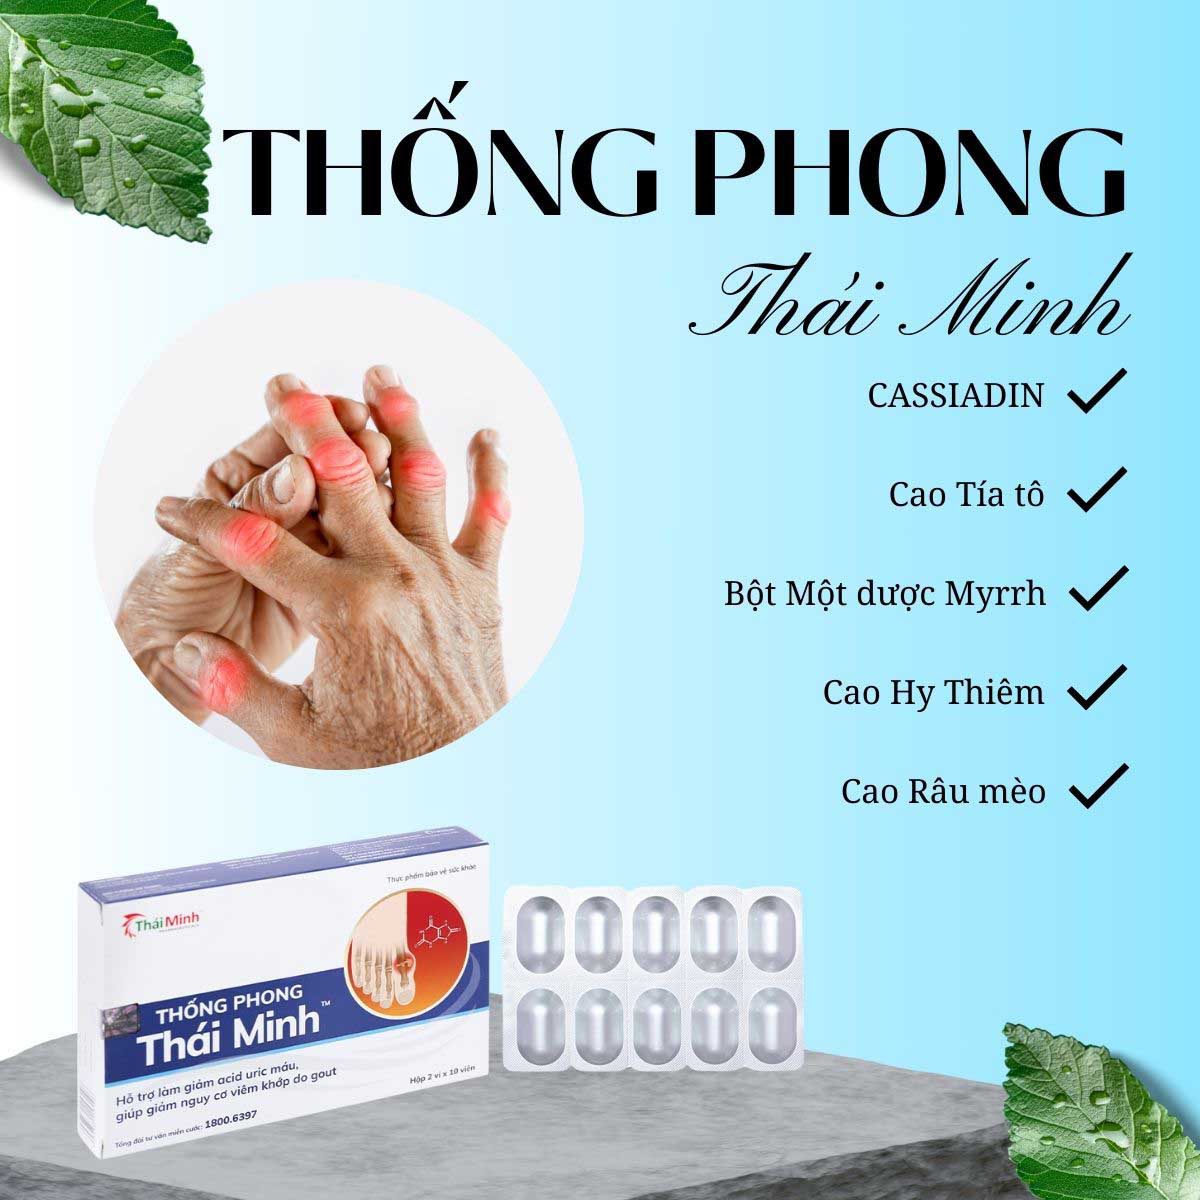 Thống Phong Thái Minh